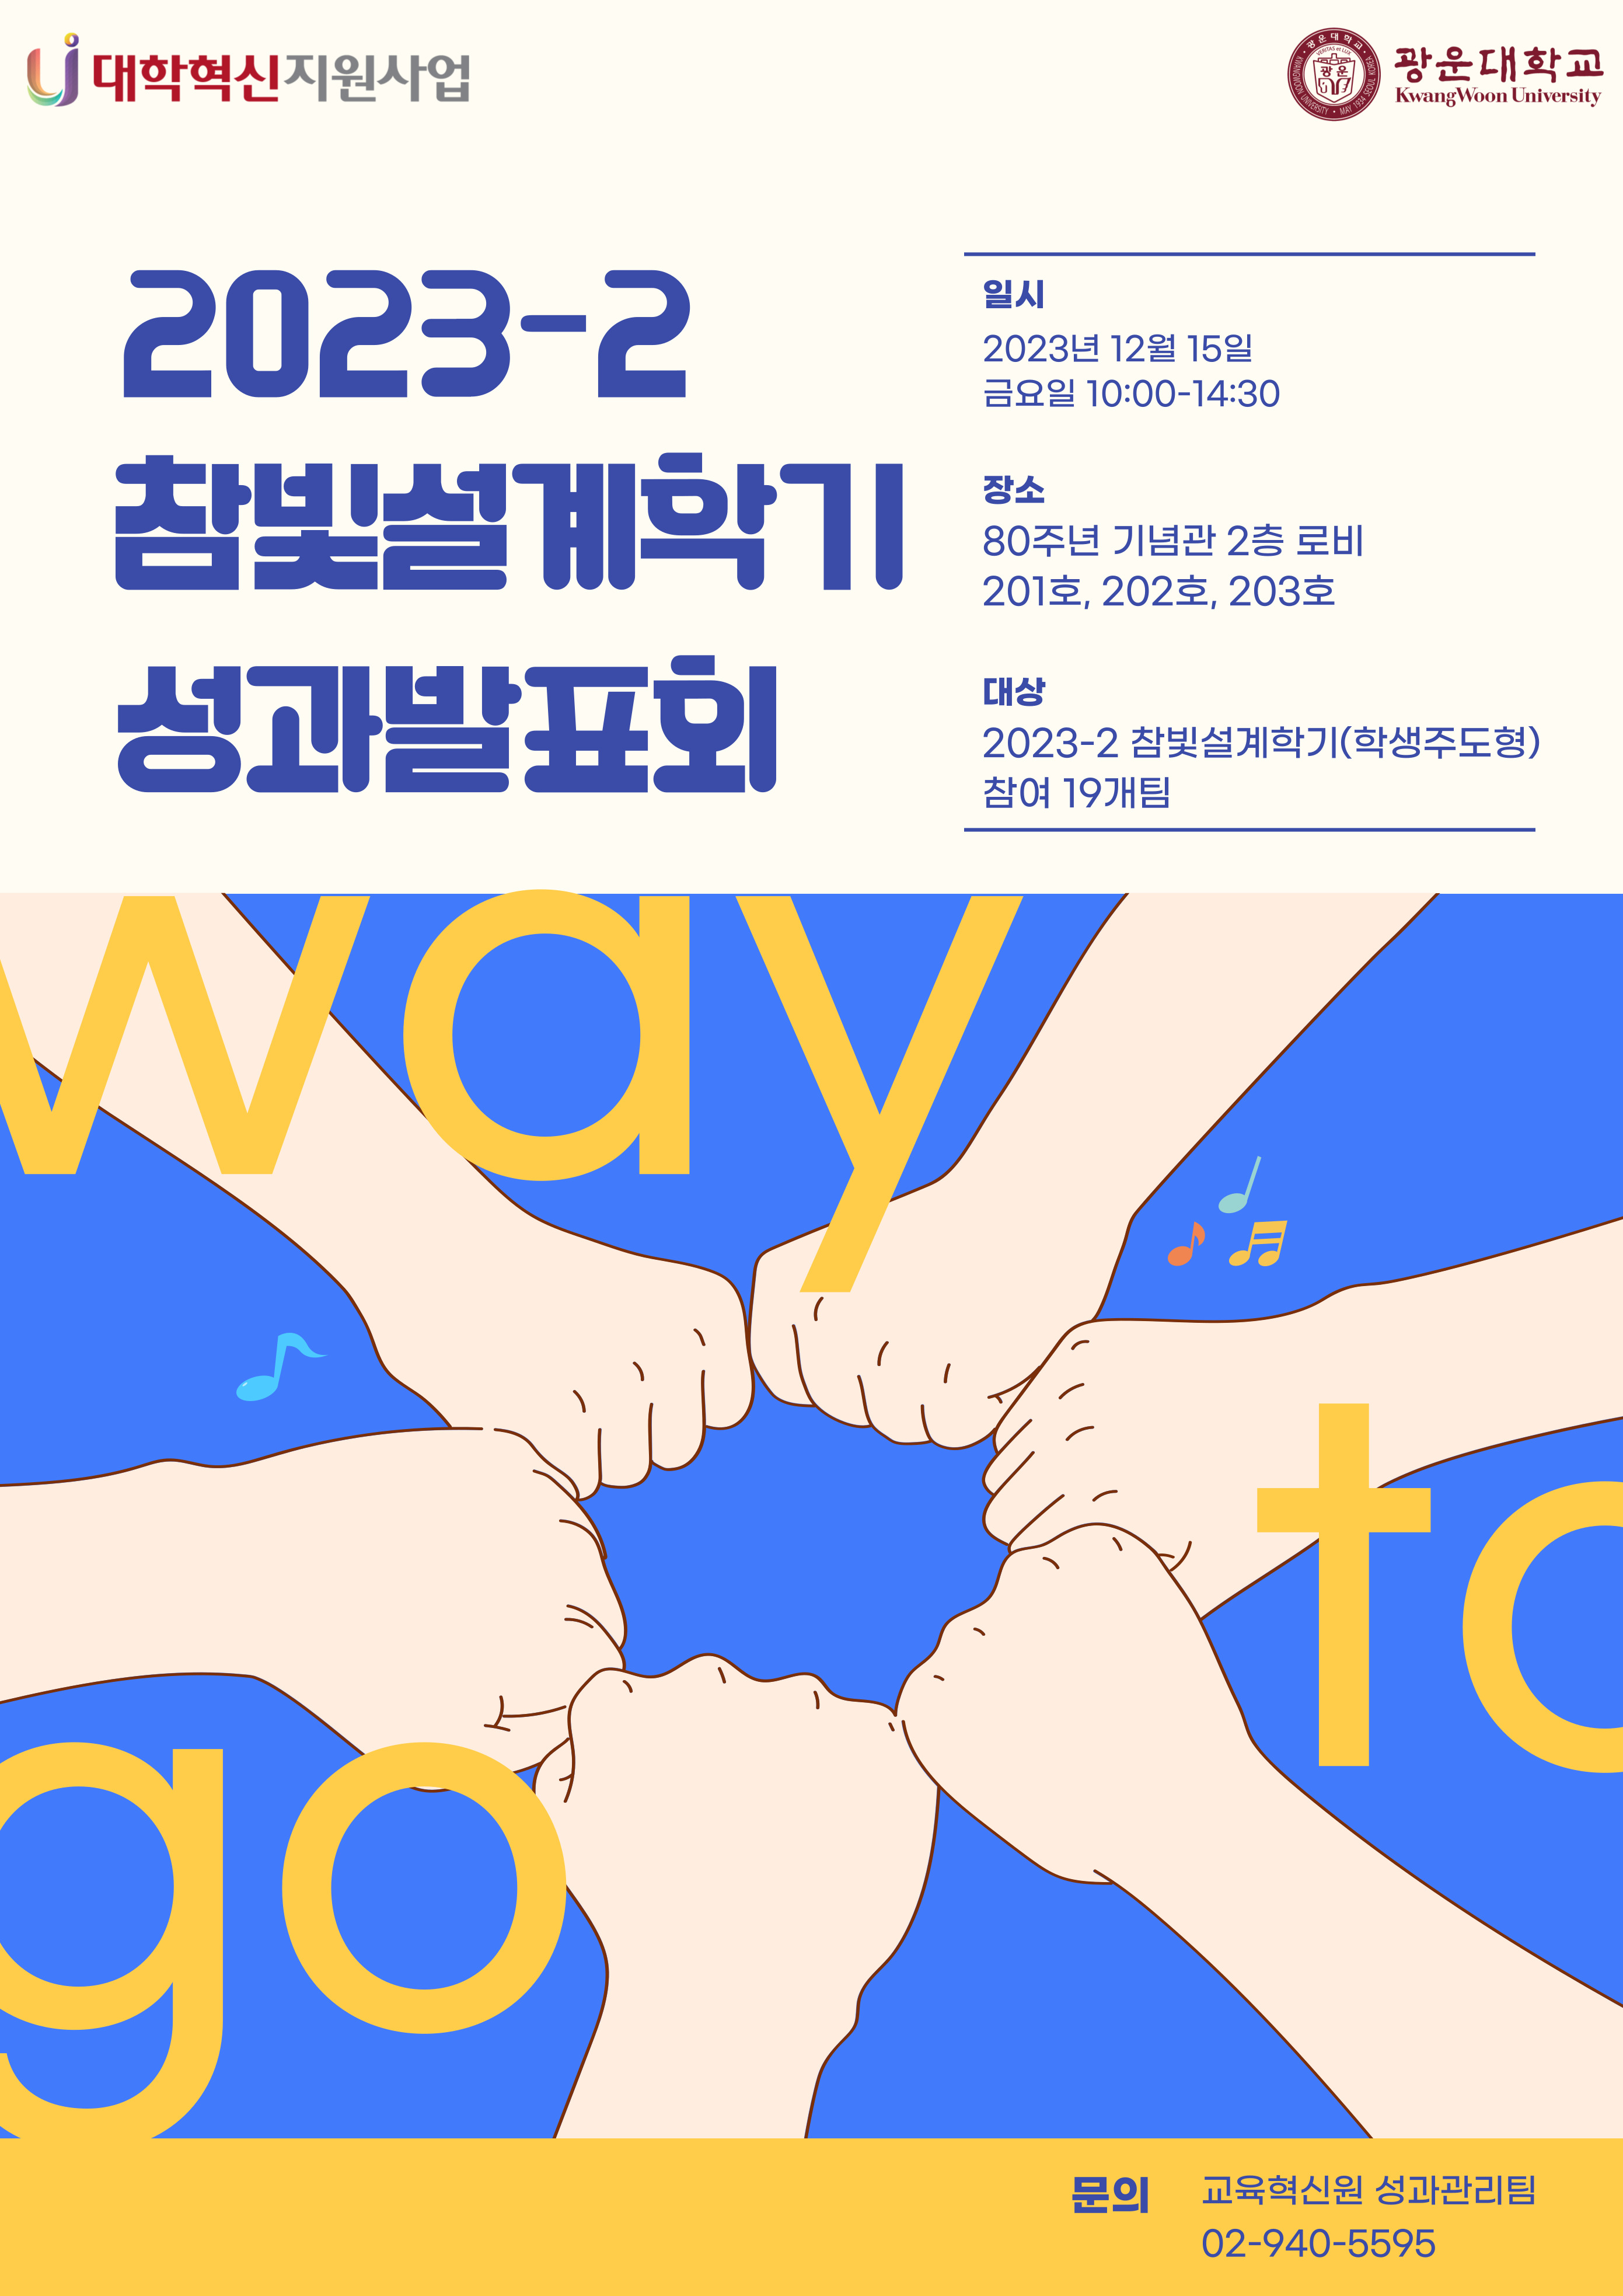 2023_2 참빛설계학기(학생주도형) 성과발표회 포스터